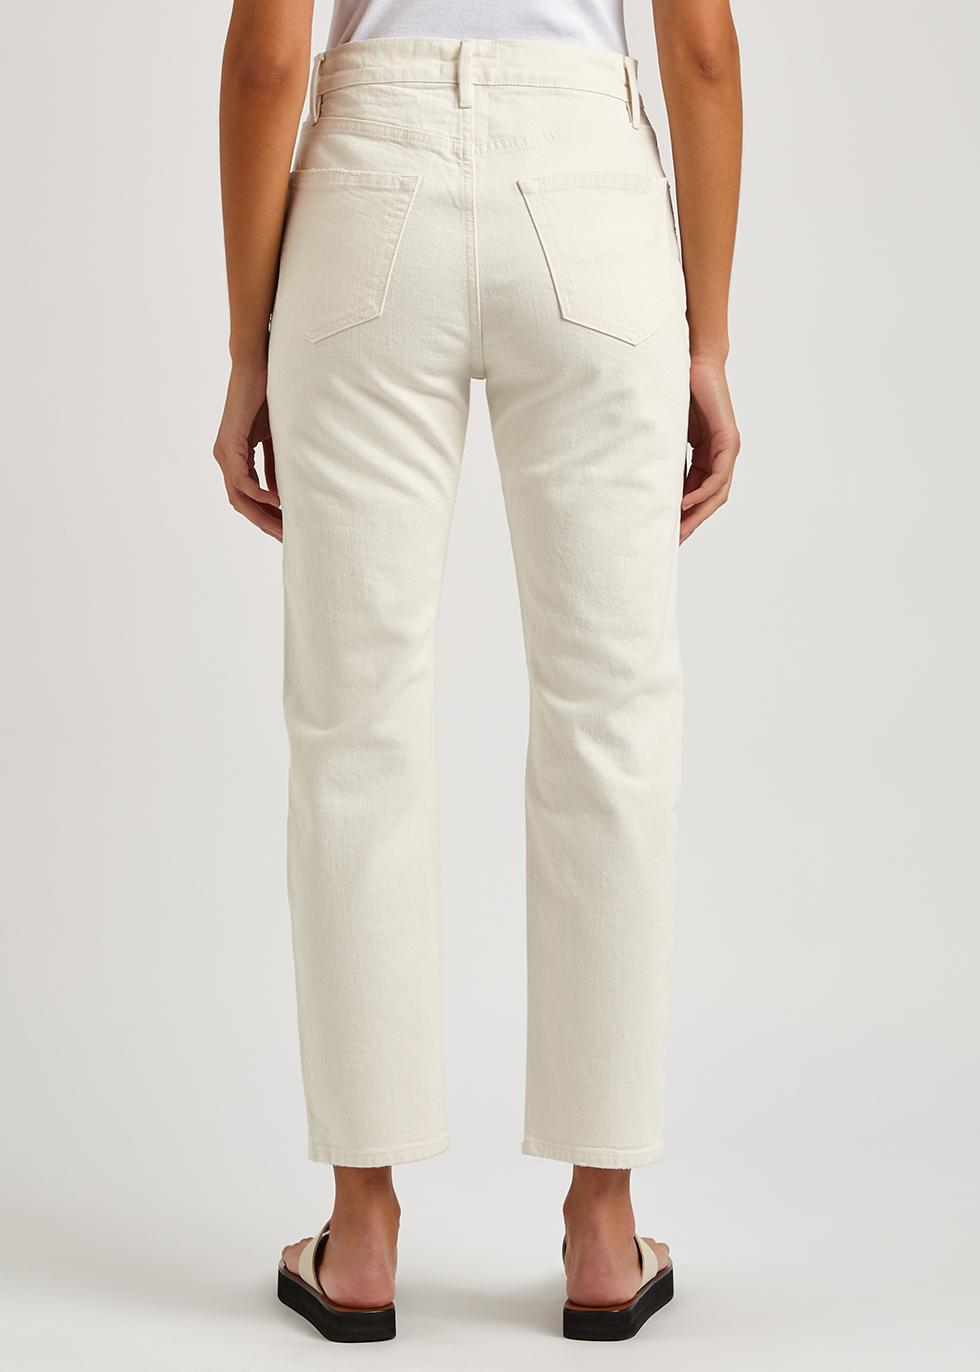 FRAME Denim Le Original Cream Straight-leg Jeans in White | Lyst